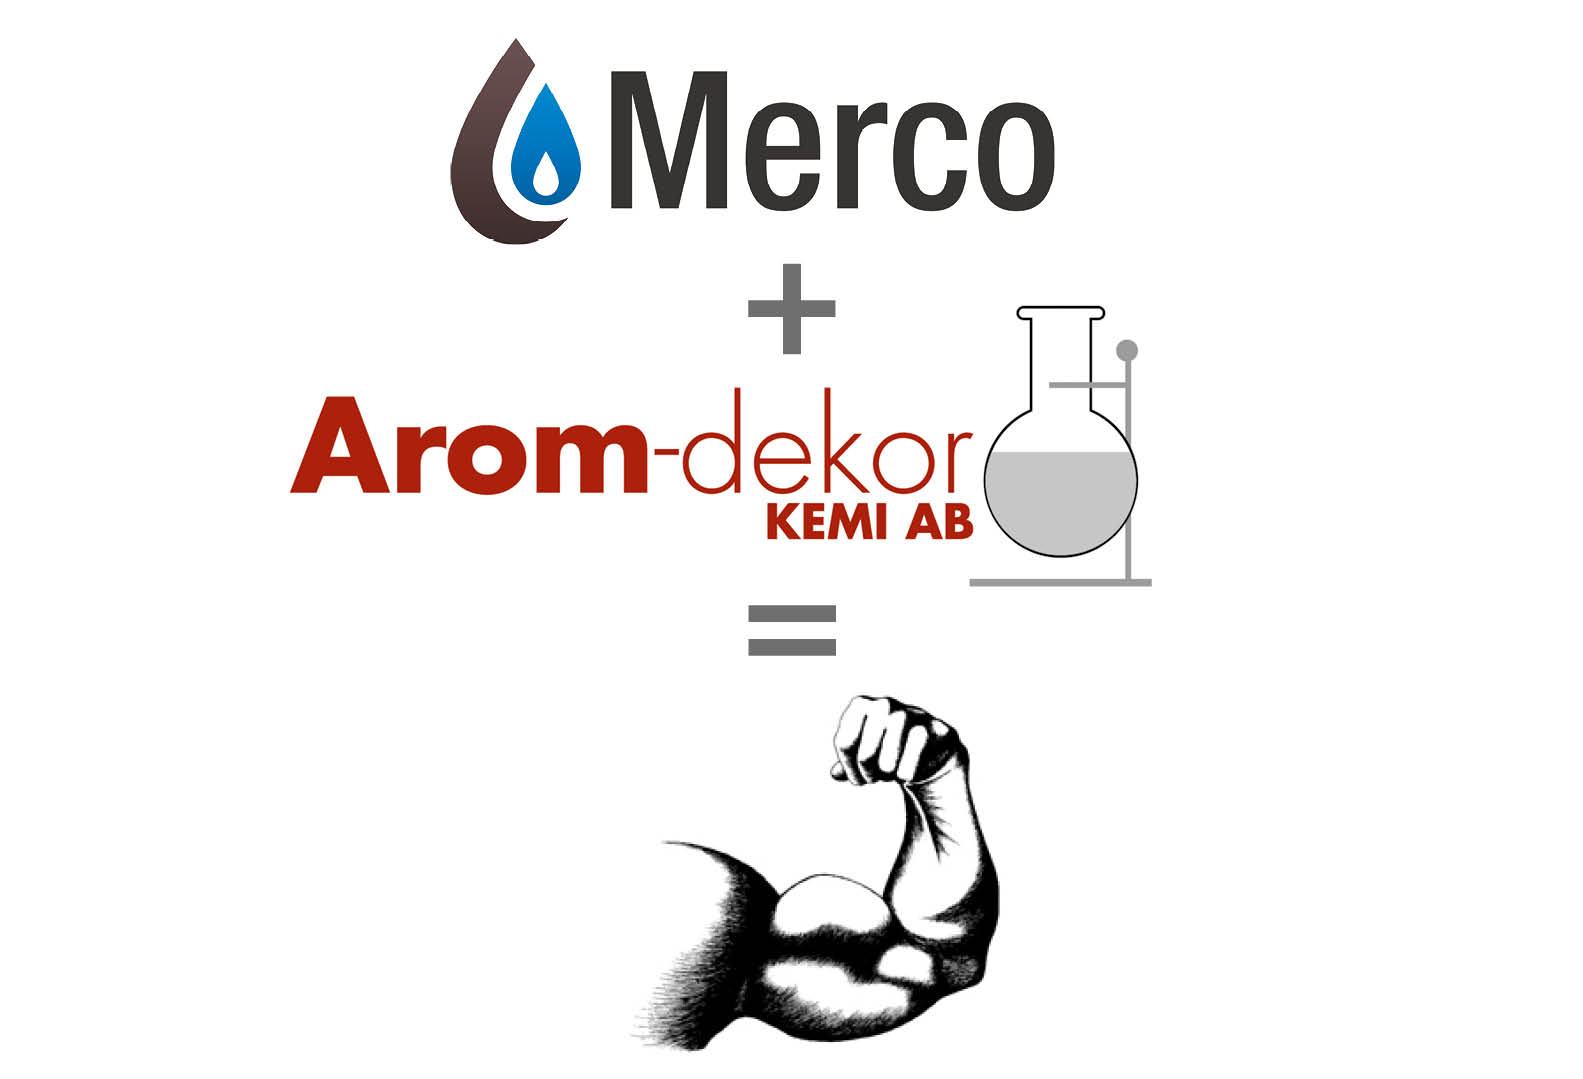 Arom-dekor Kemi AB förvärvar 80% av aktierna i norska Merco AS